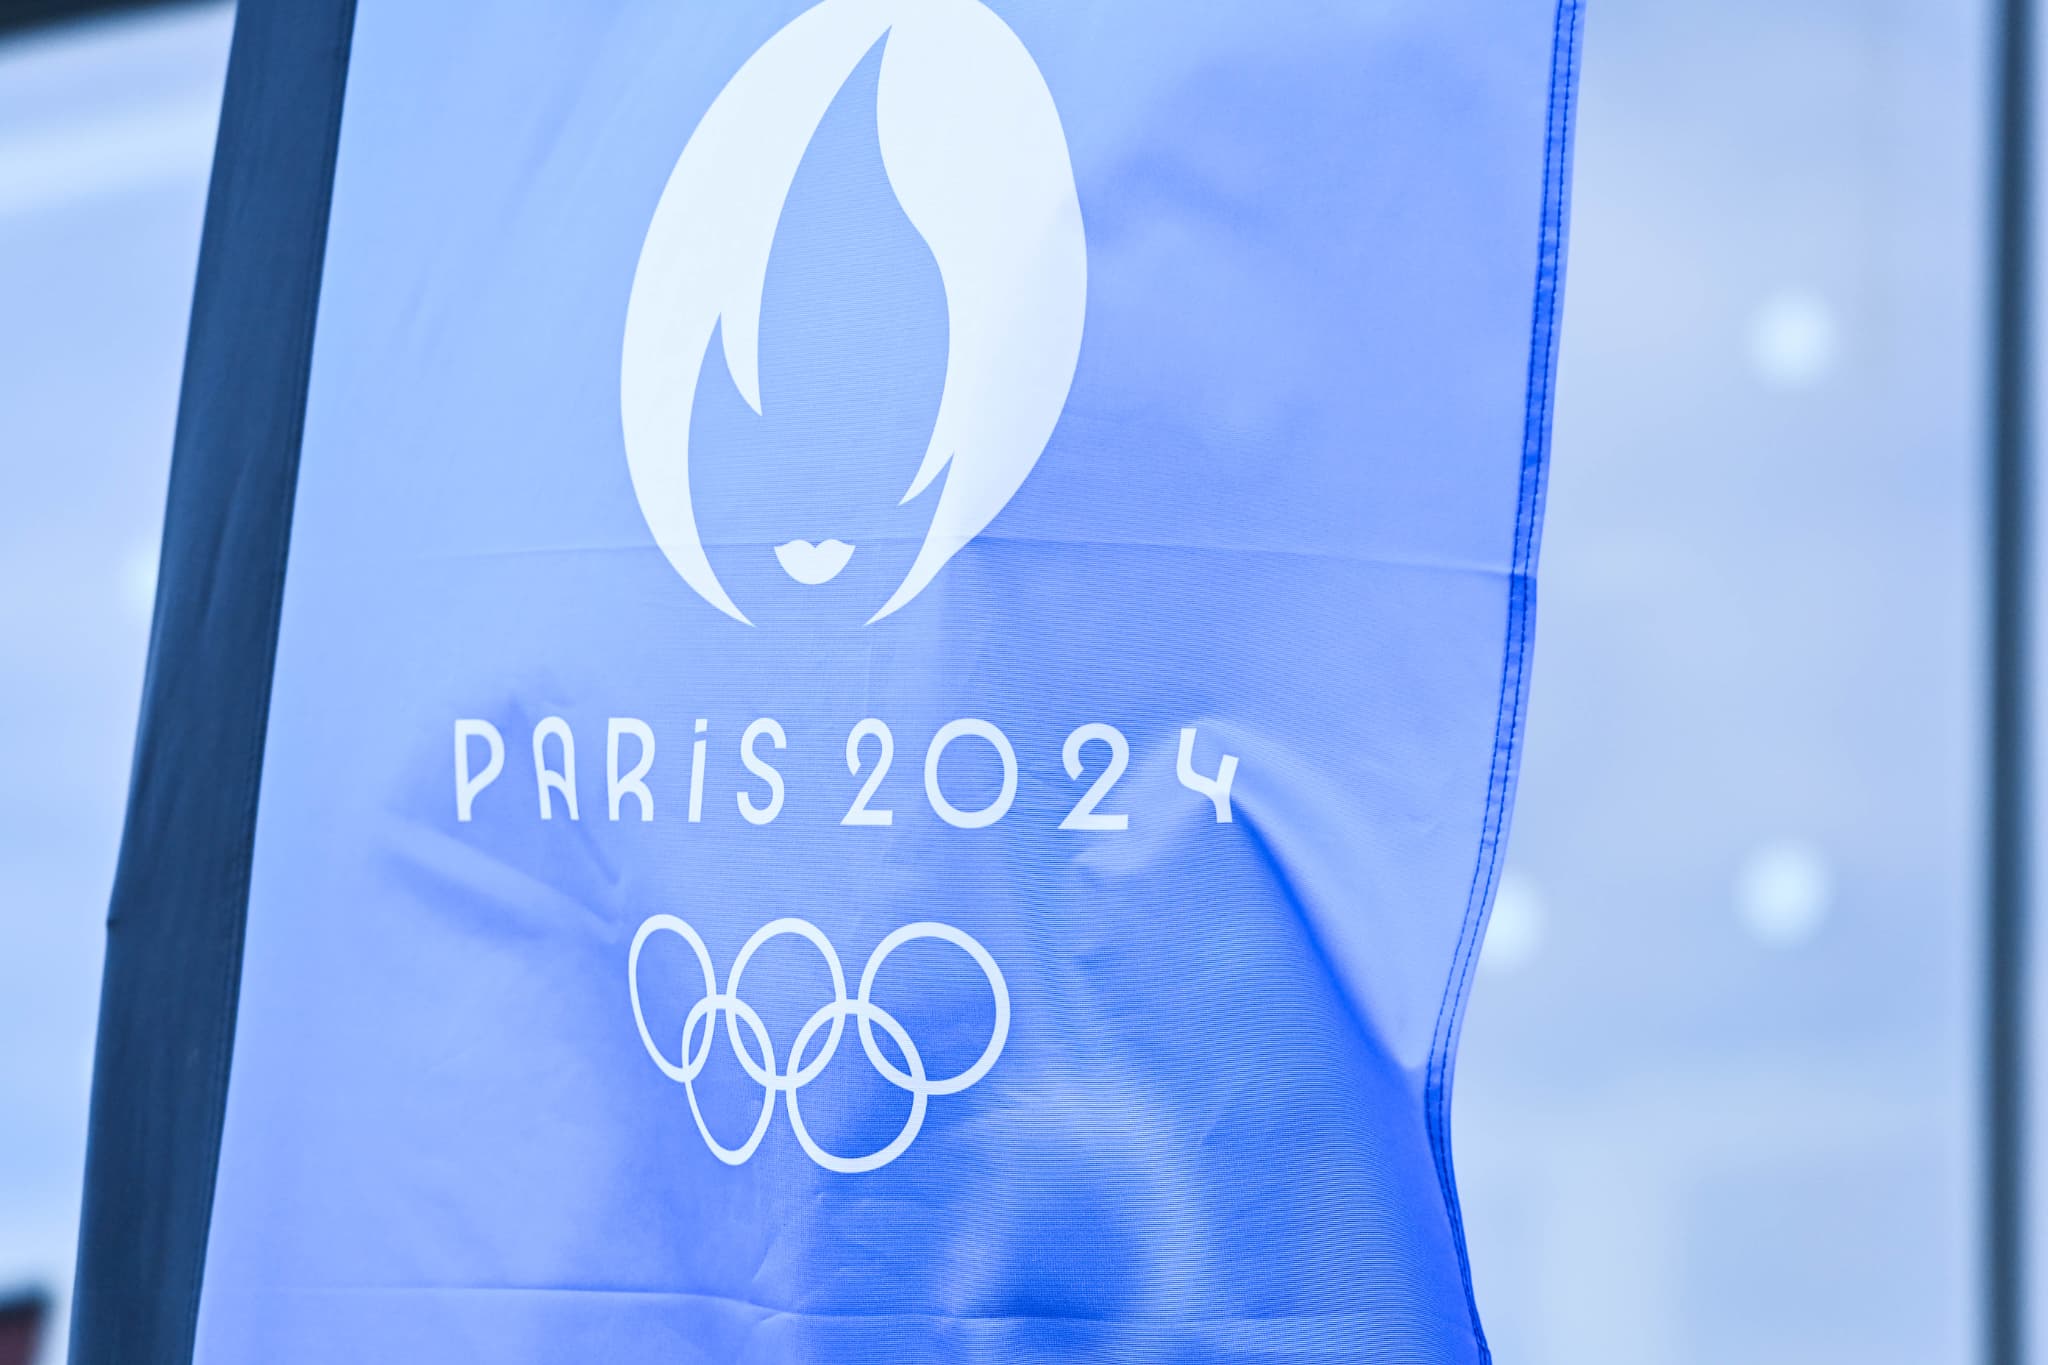 jo de paris 2024: des contrôles sanitaires renforcés sur les sites olympiques pour éviter les intoxications alimentaires